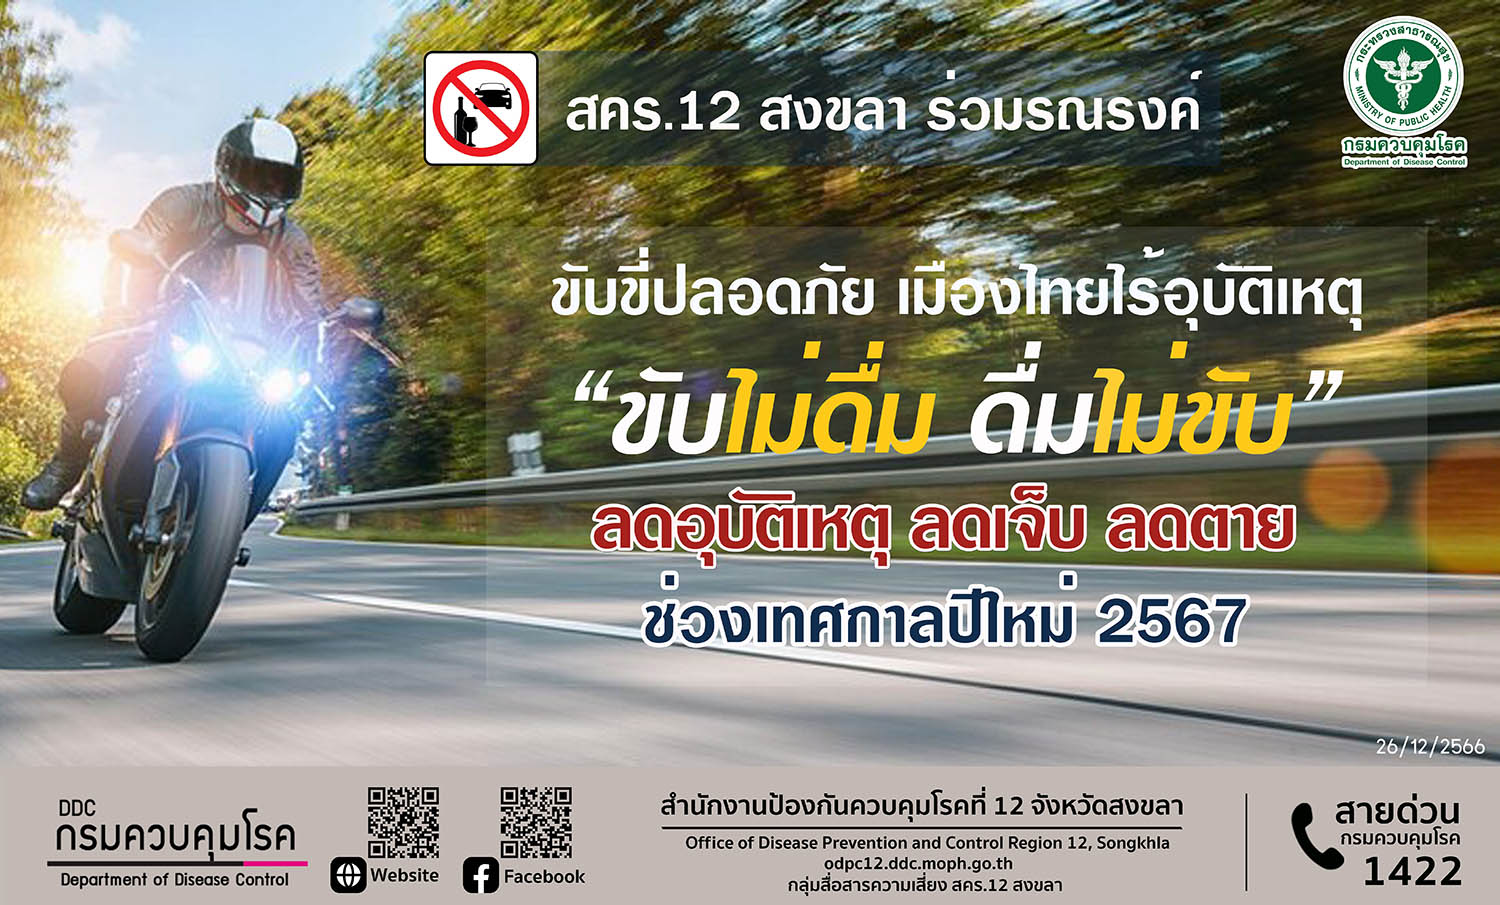 สคร.12 สงขลา ร่วมรณรงค์ ขับขี่ปลอดภัย เมืองไทยไร้อุบัติเหตุ

ย้ำ “ขับไม่ดื่ม ดื่มไม่ขับ”